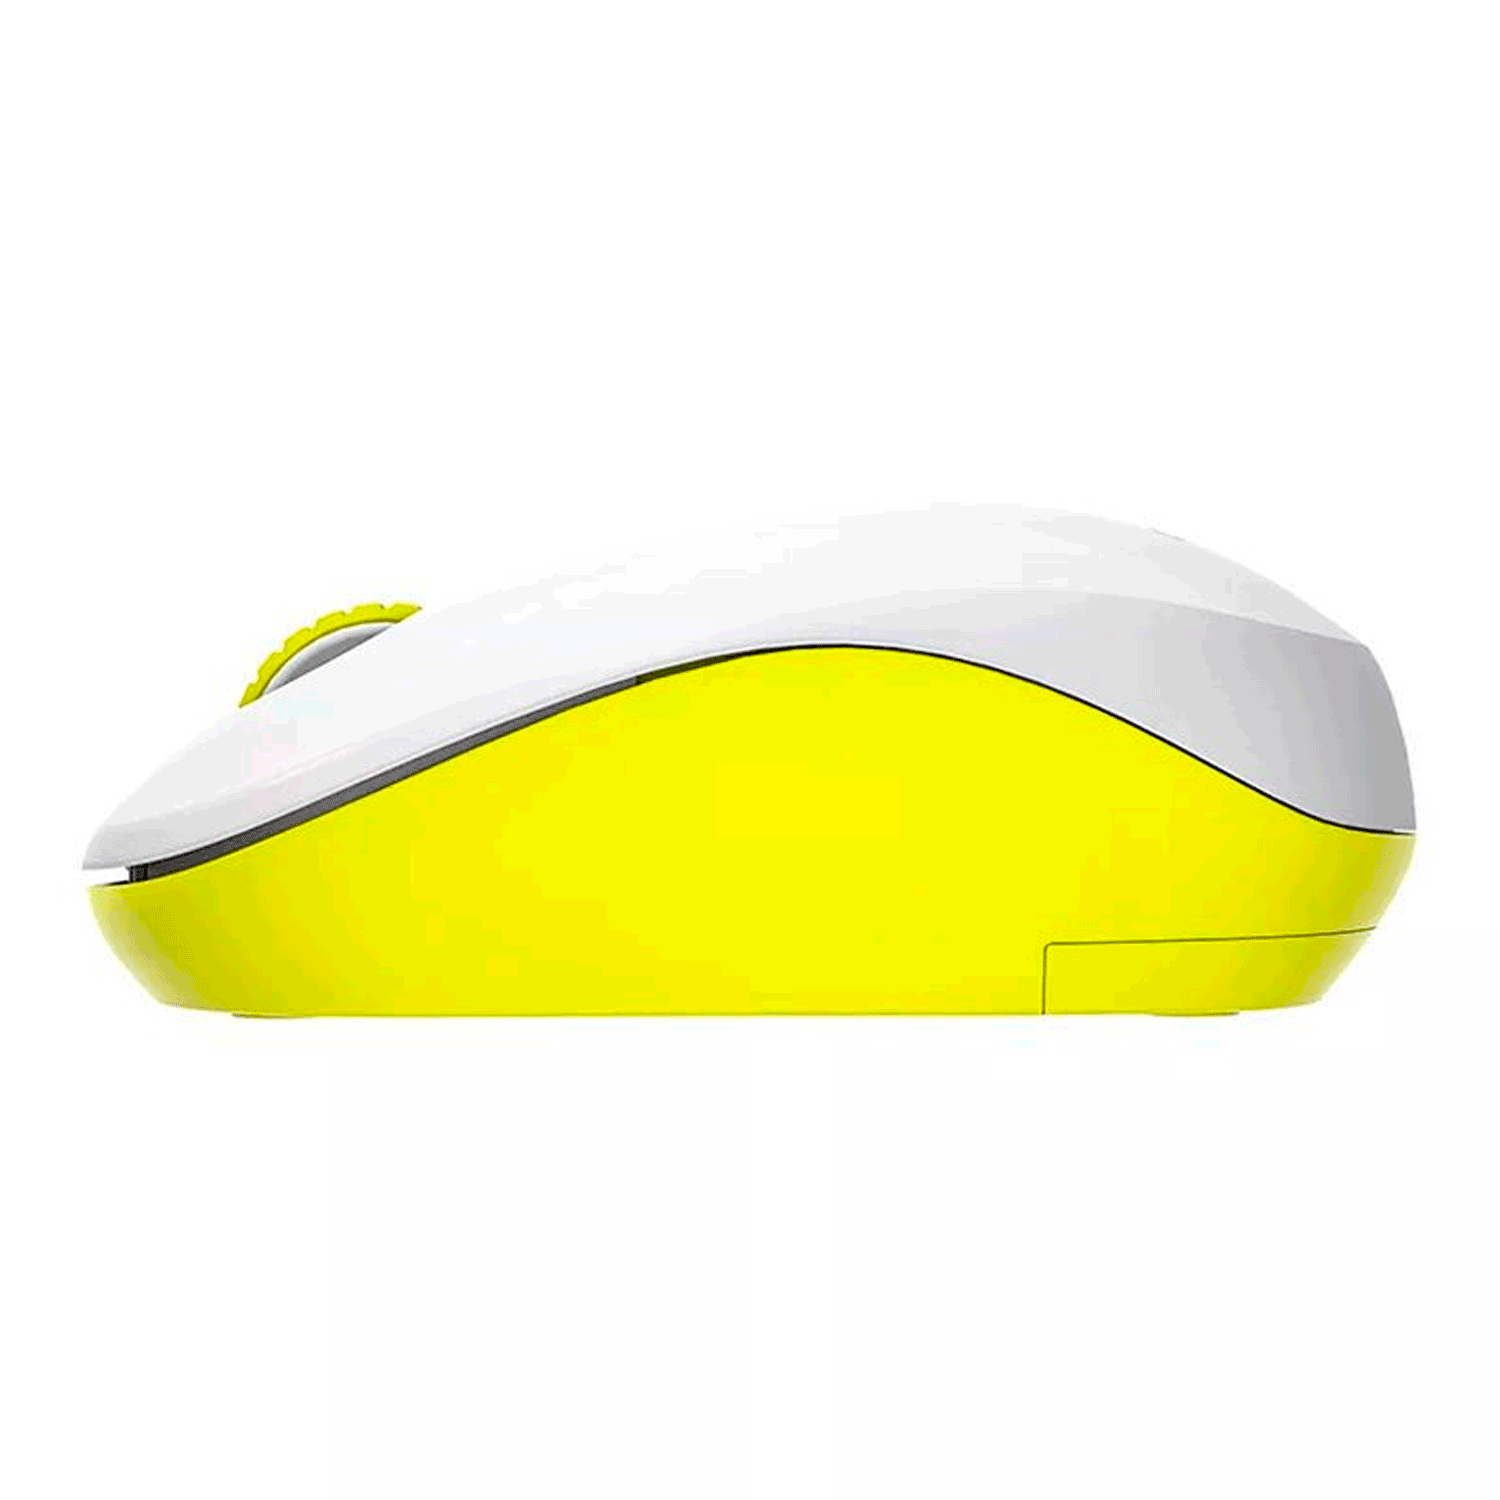 Mouse Aigo M35 - Branco e Amarelo